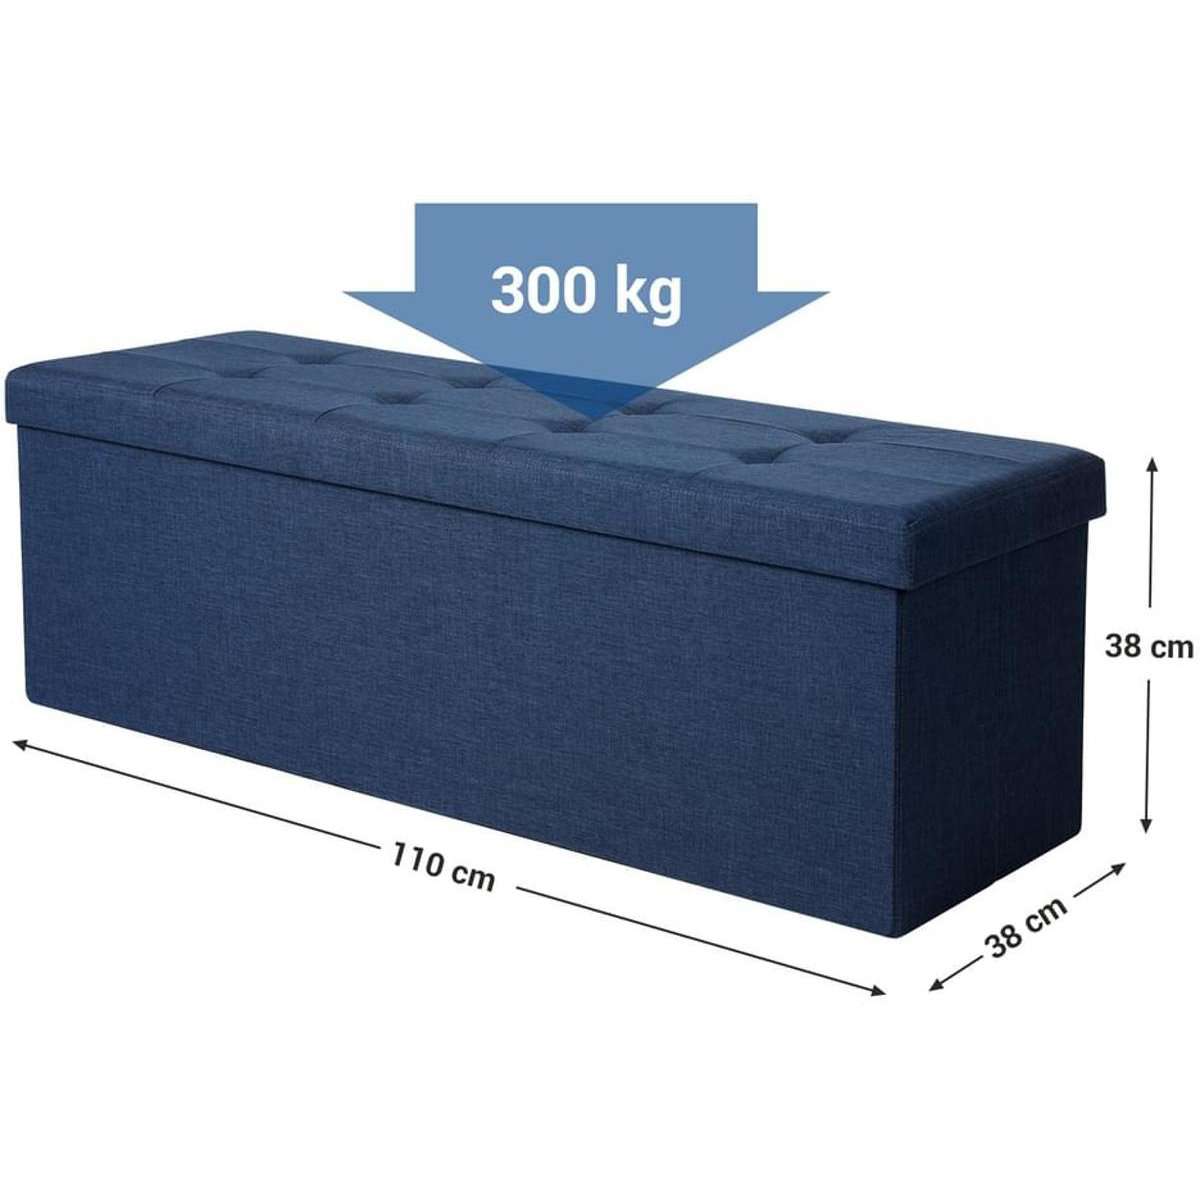 Nancy's Hocker Blue Large - Canapé avec espace de rangement - Canapé - Repose-pieds - 120L